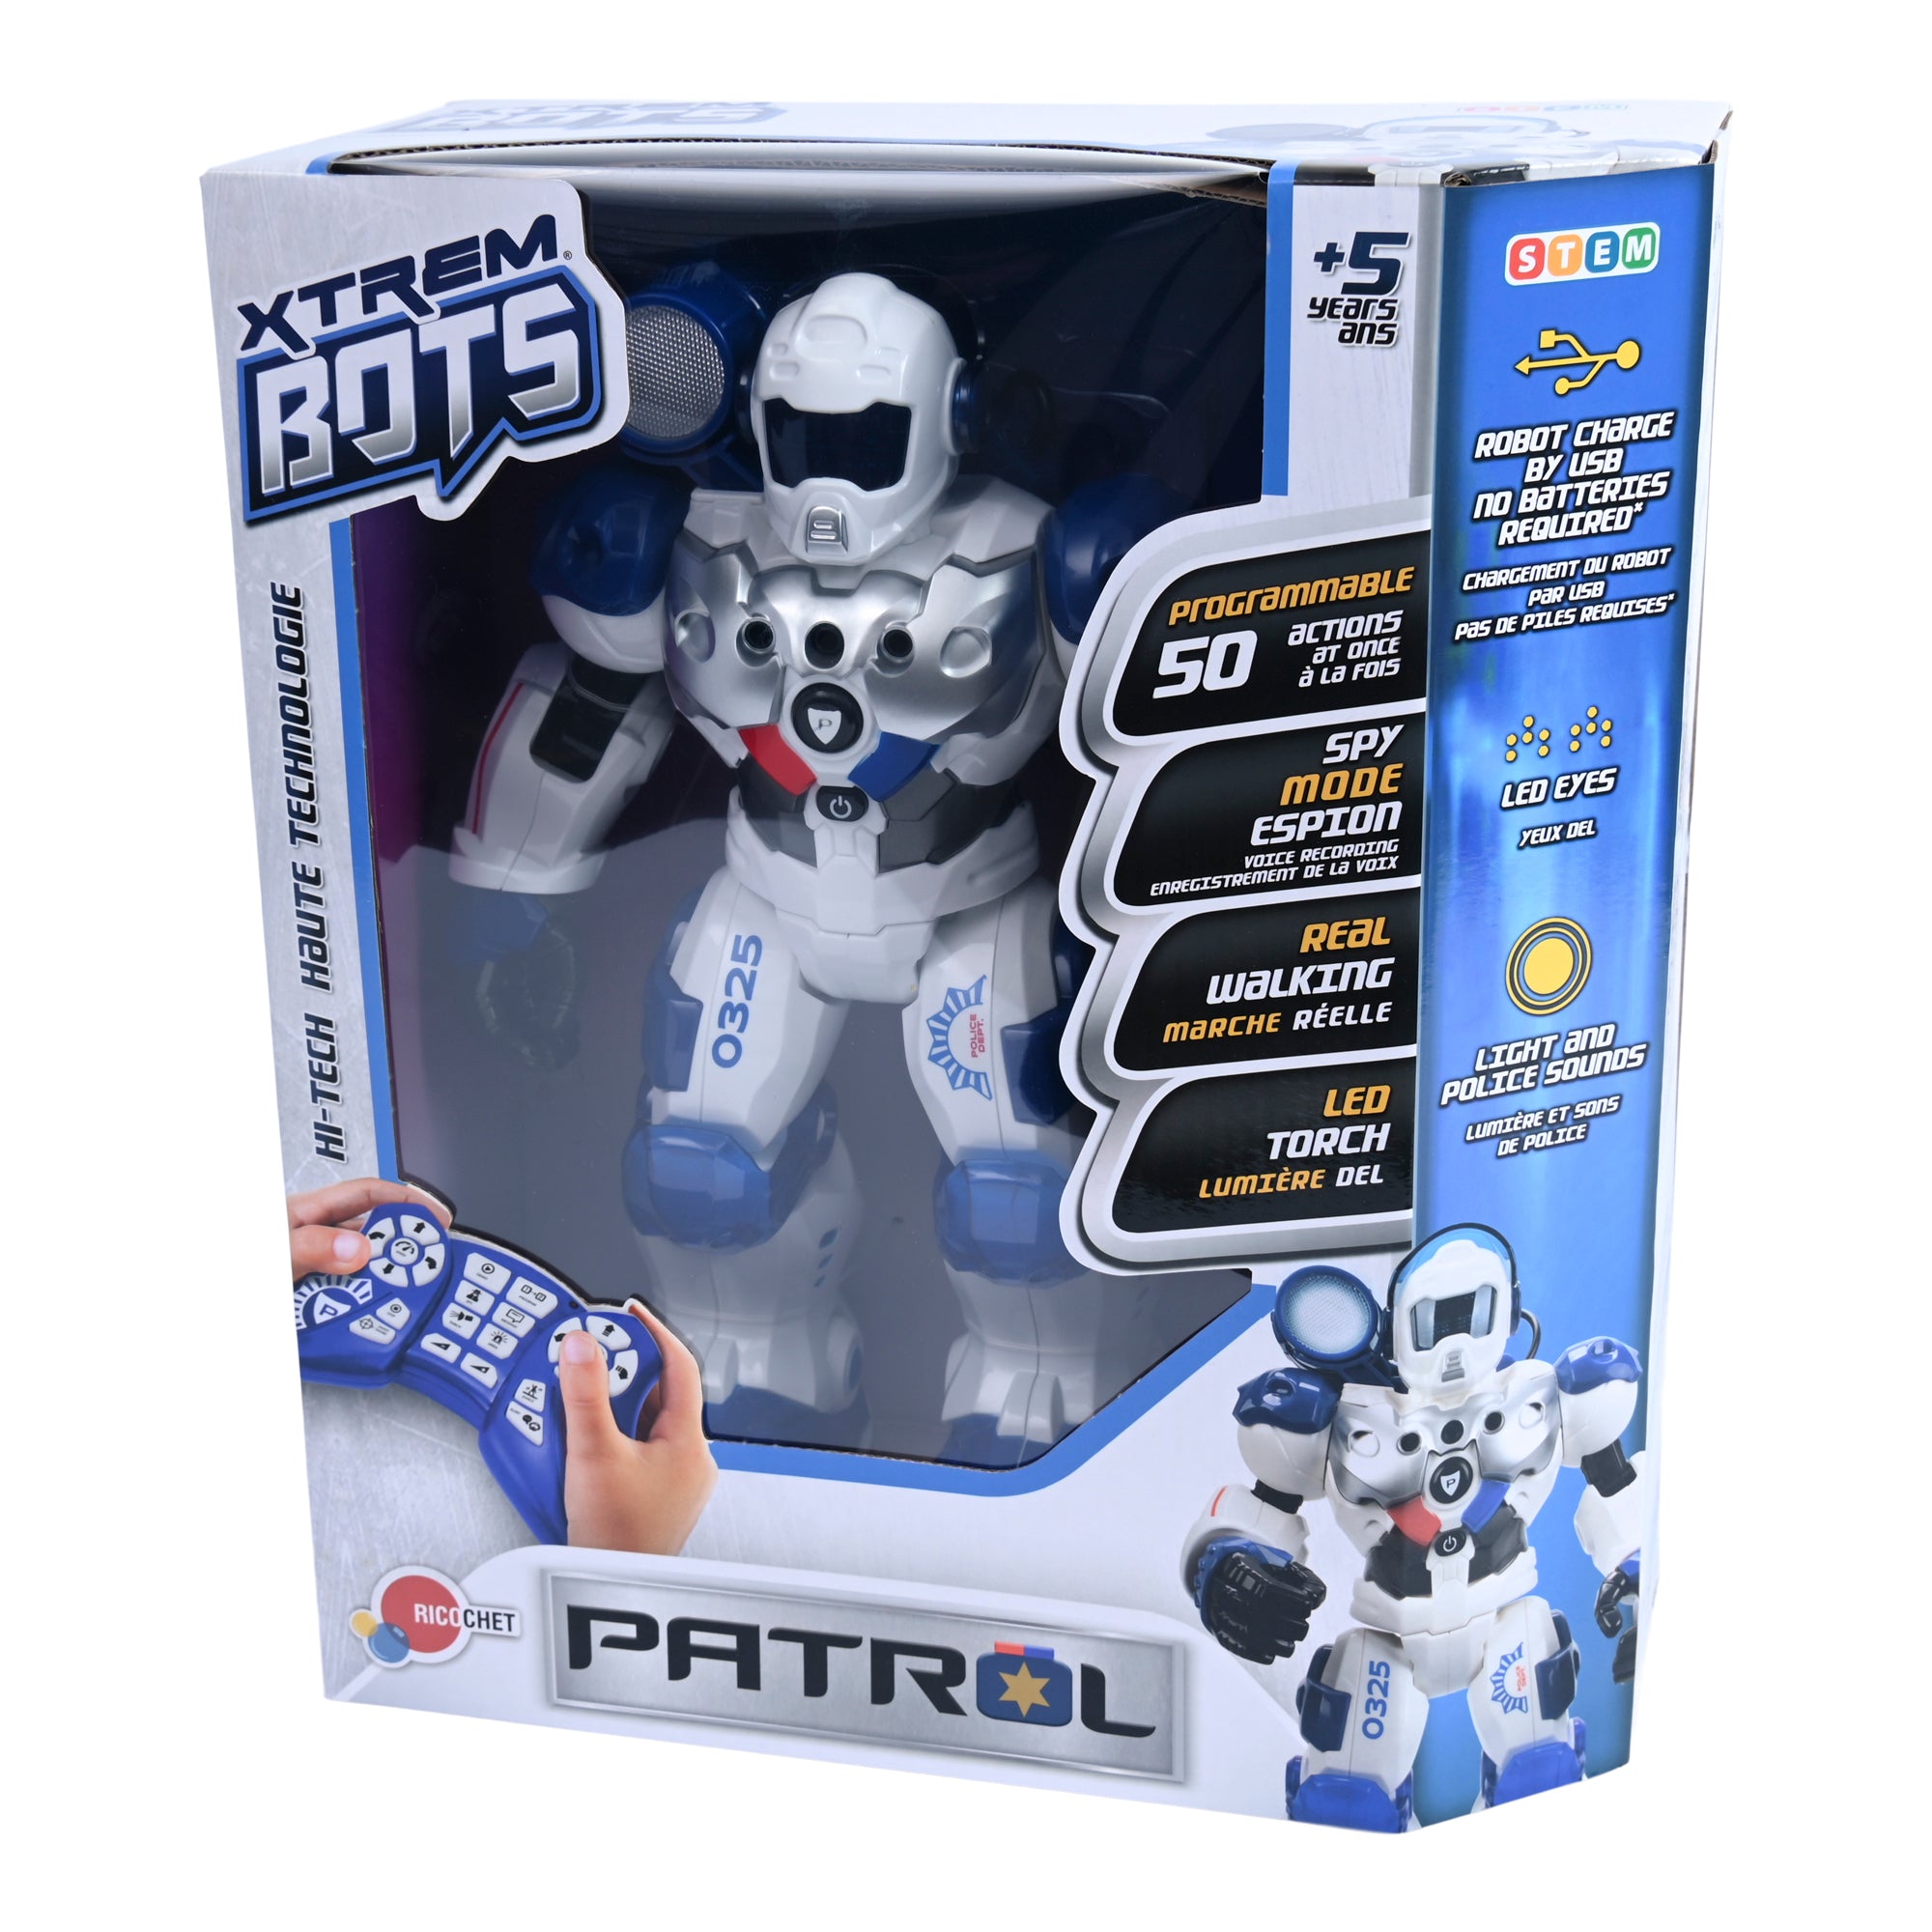 Xtrem Bots - Patrol, Robot Enfant 5 Ans Et Plus